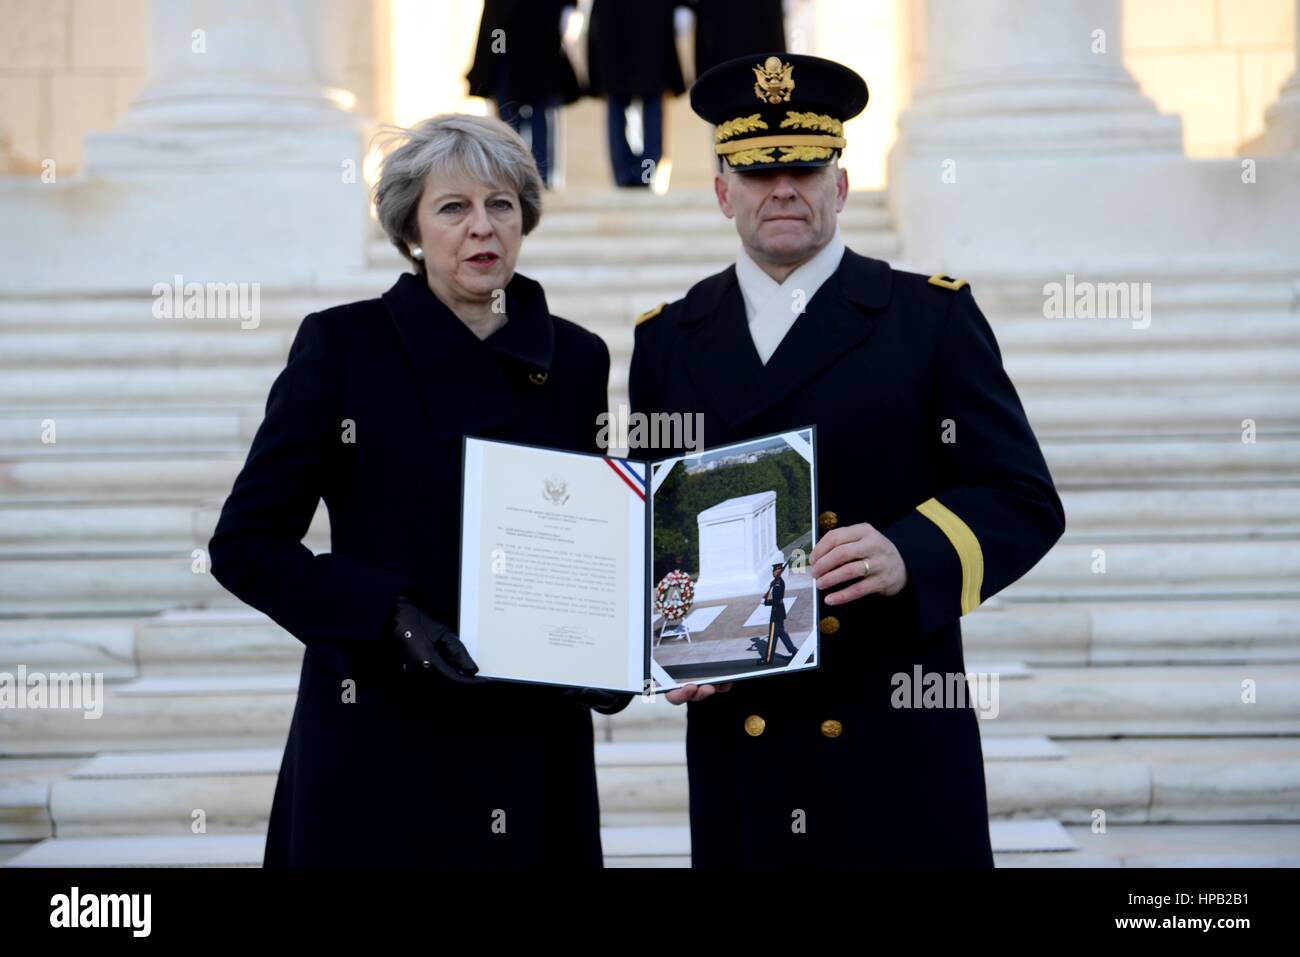 Britische Premierminister Theresa May und U.S. Army Kommandierender General Bradley Becker nehmen an einer Kranzniederlegung am Arlington National Cemetery Grab des unbekannten Soldaten 27. Januar 2017 in Arlington, Virginia. Stockfoto